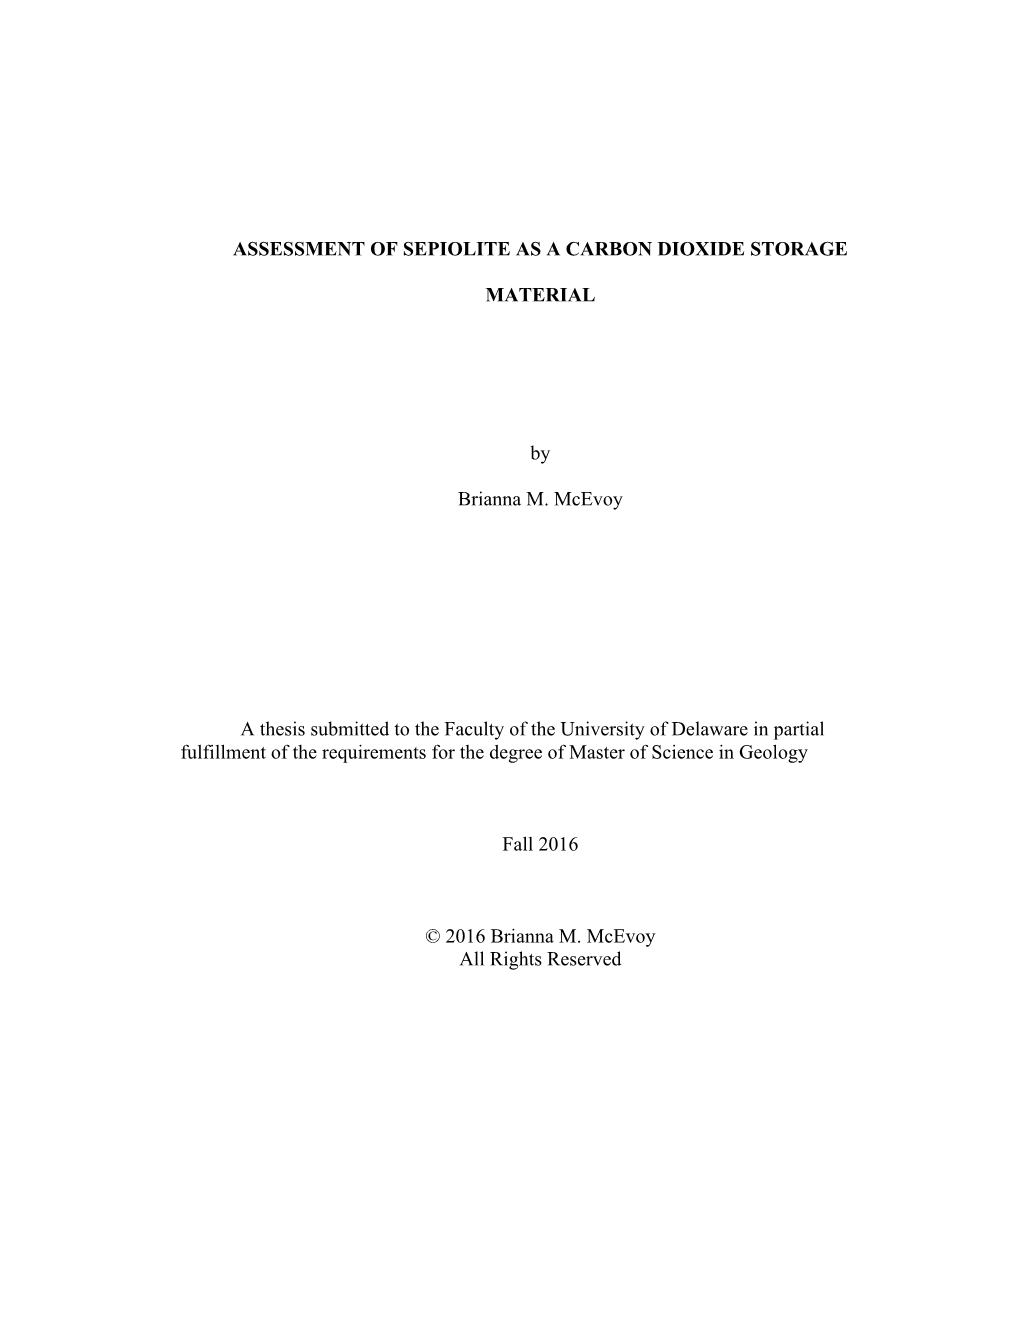 Assessment of Sepiolite As a Carbon Dioxide Storage